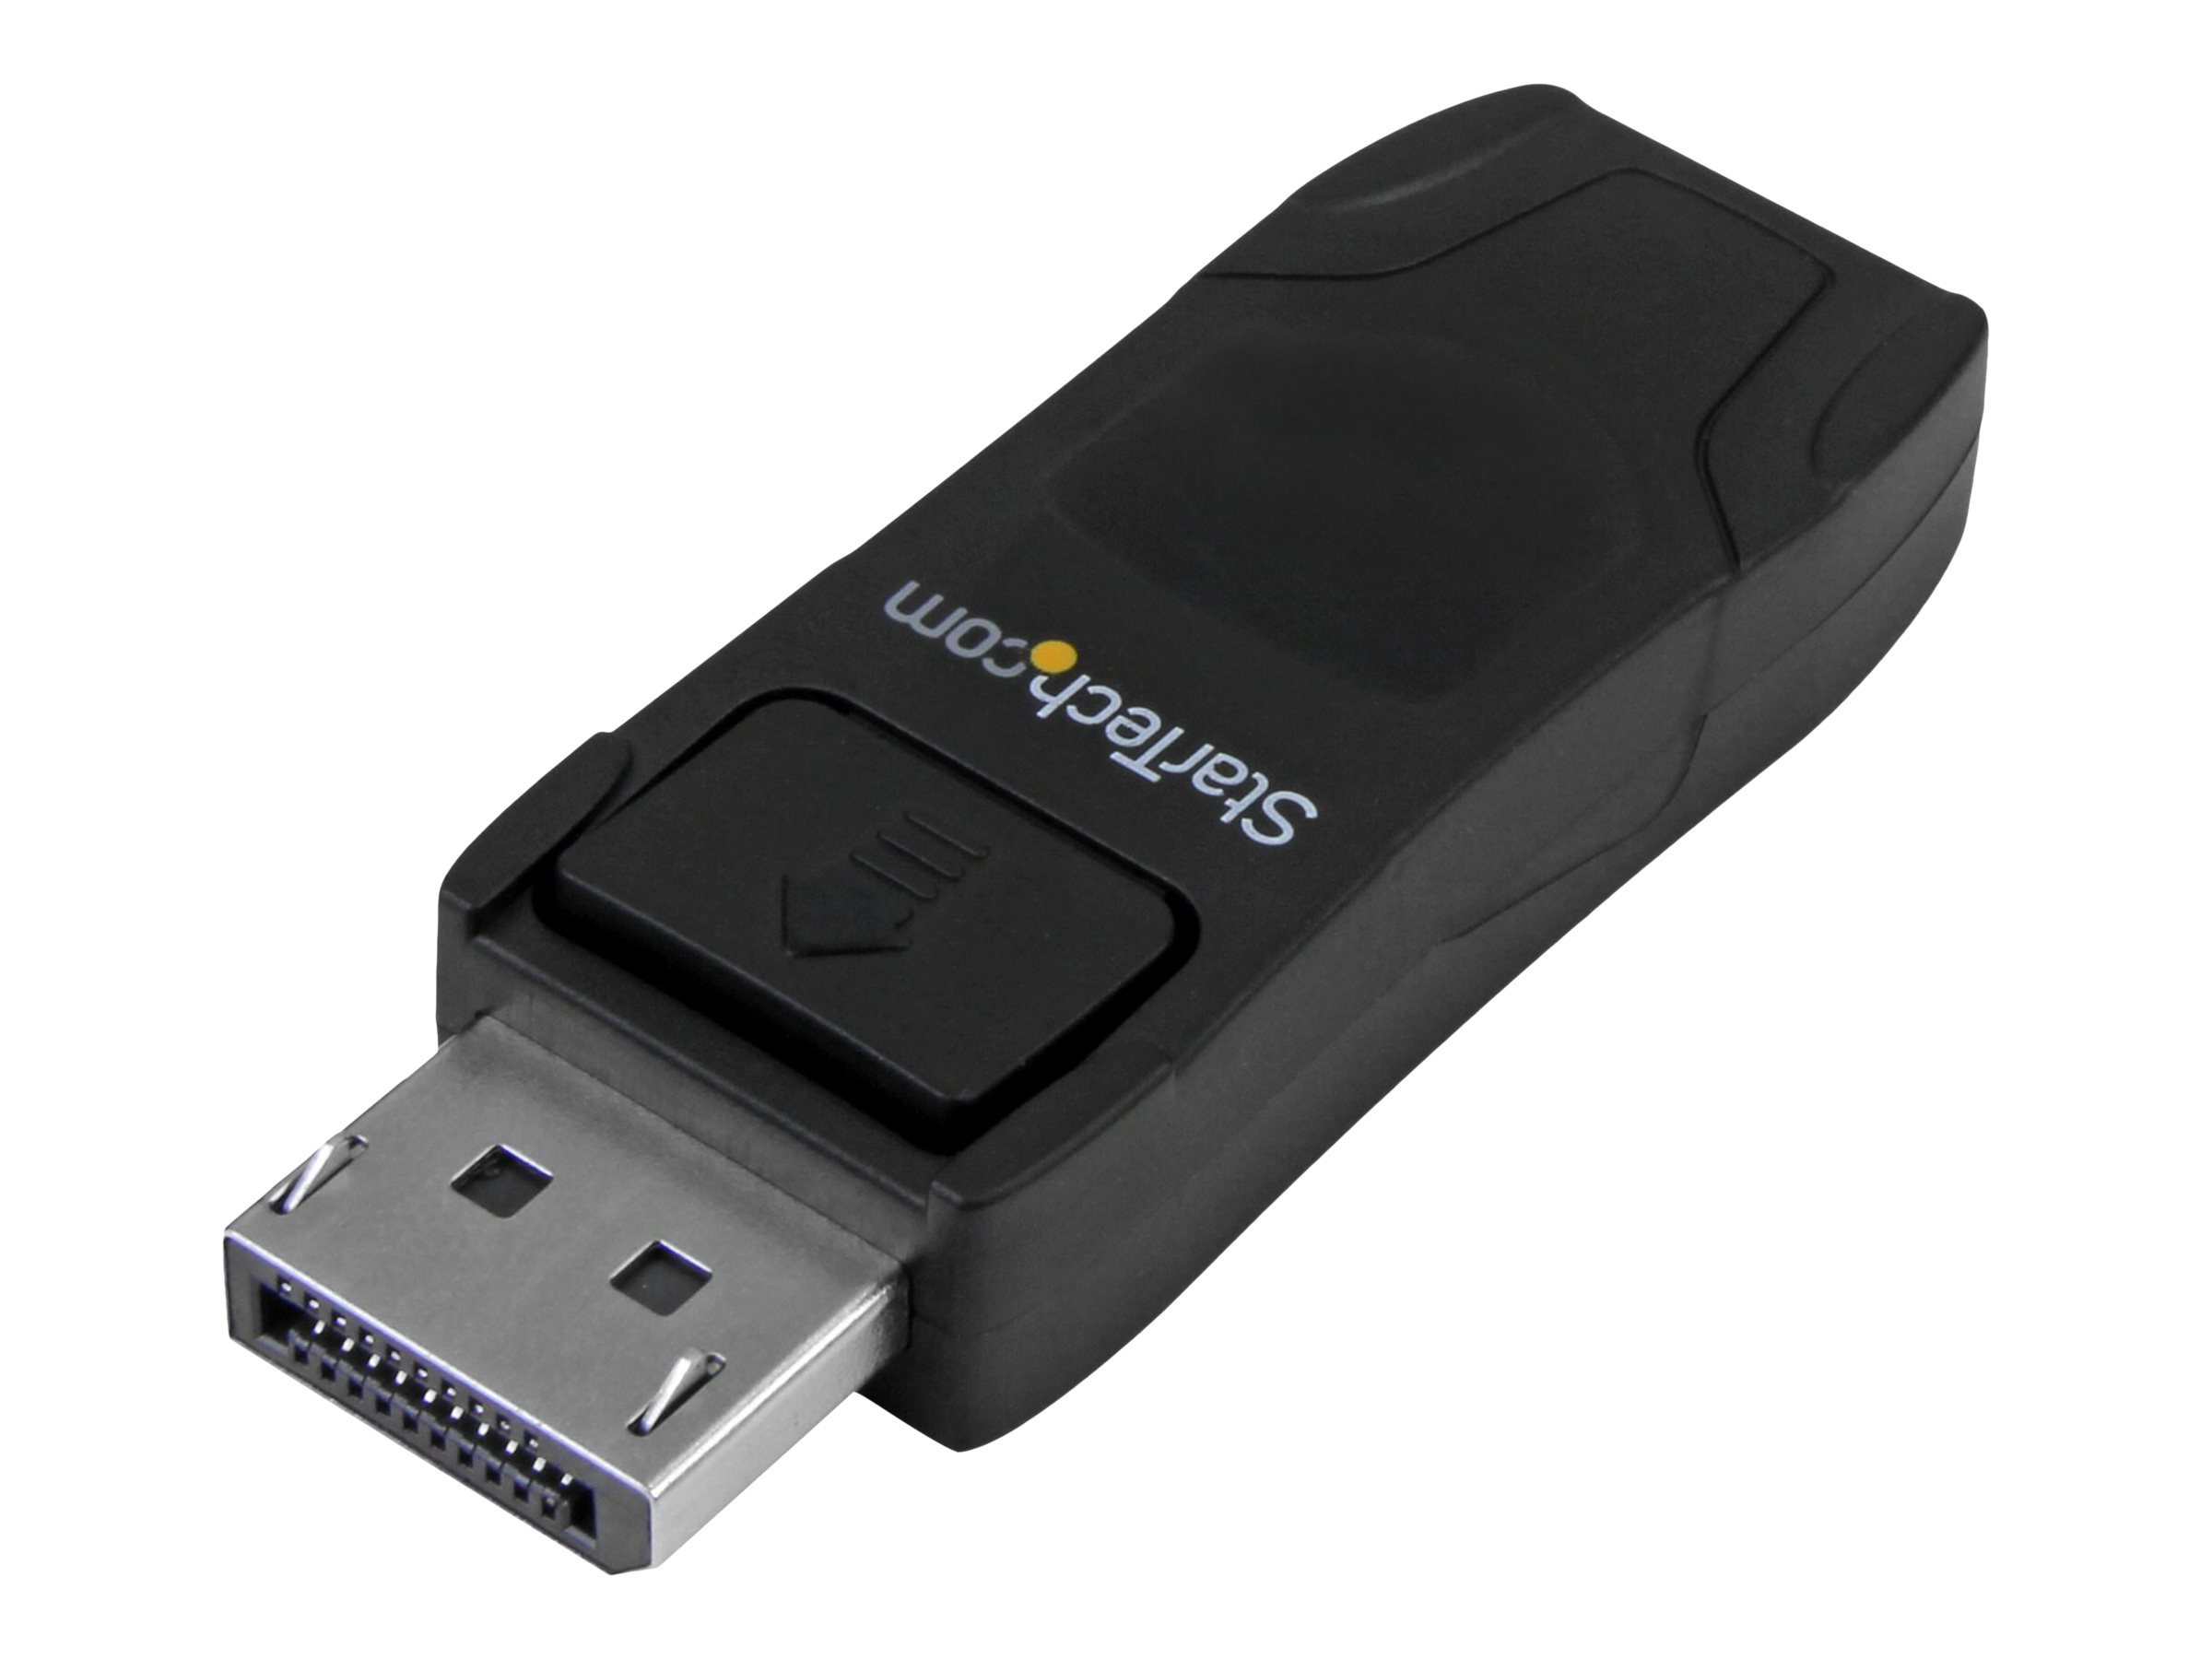 StarTech.com Adaptateur Displayport vers HDMI - 4K30 - DPCP & HDCP - DisplayPort 1.2 vers HDMI 1.4 - Adaptateur Apple HDMI (DP2HD4KADAP) - Adaptateur vidéo - DisplayPort mâle pour HDMI femelle - noir - passif, support 4K30Hz (3840 x 2160) - pour P/N: TB2DOCK4K2DP - DP2HD4KADAP - Accessoires pour téléviseurs